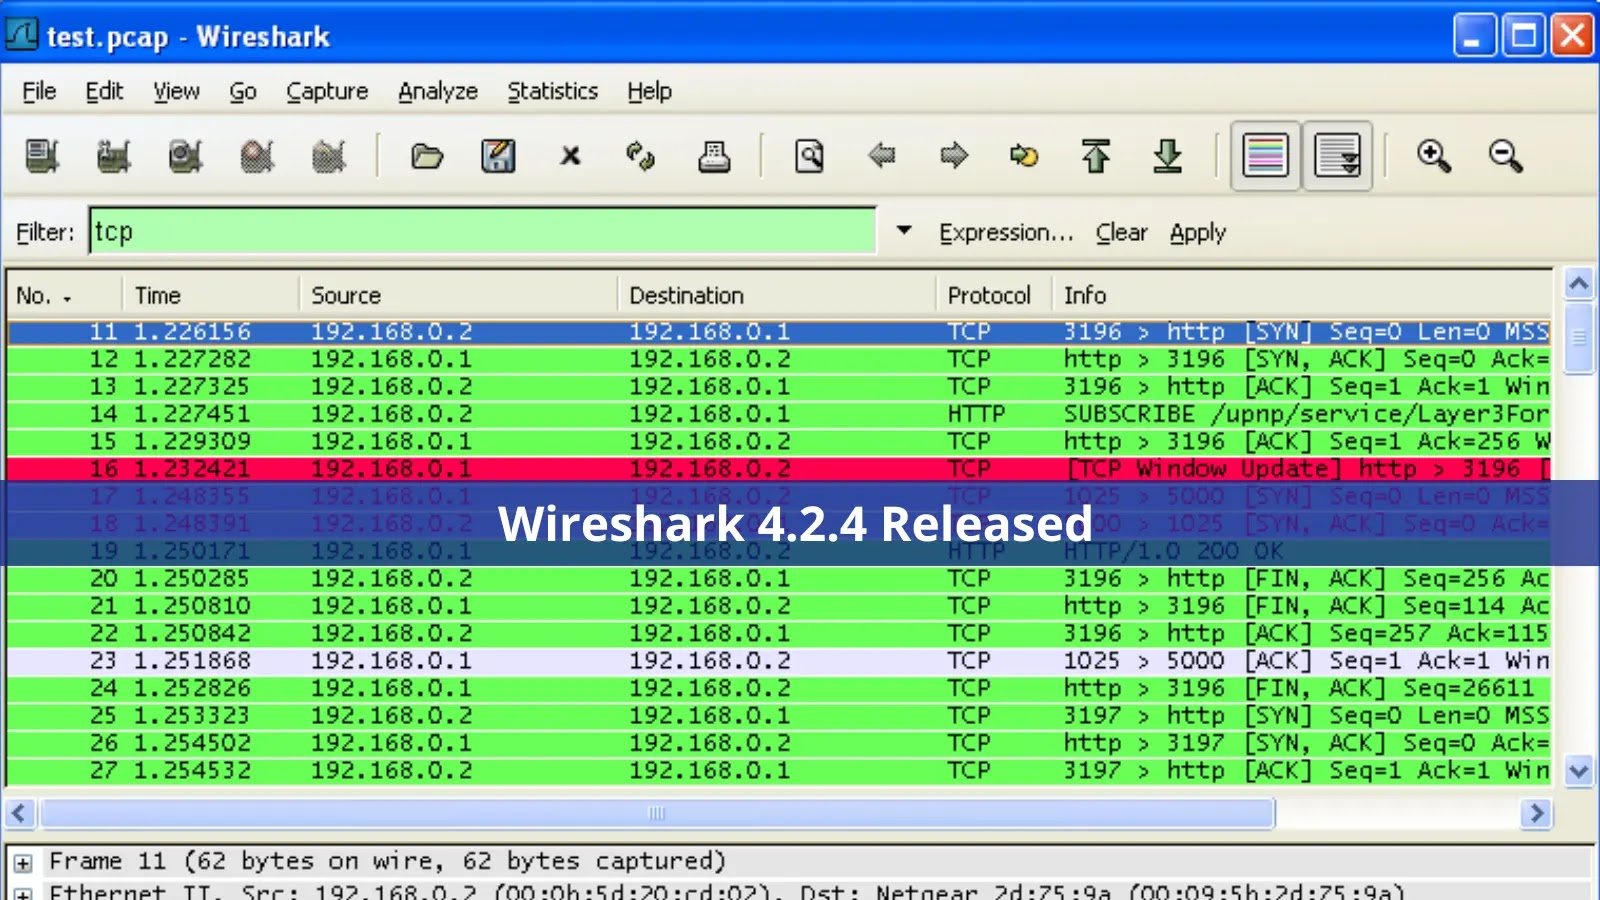 Wireshark 4.2.4 Released